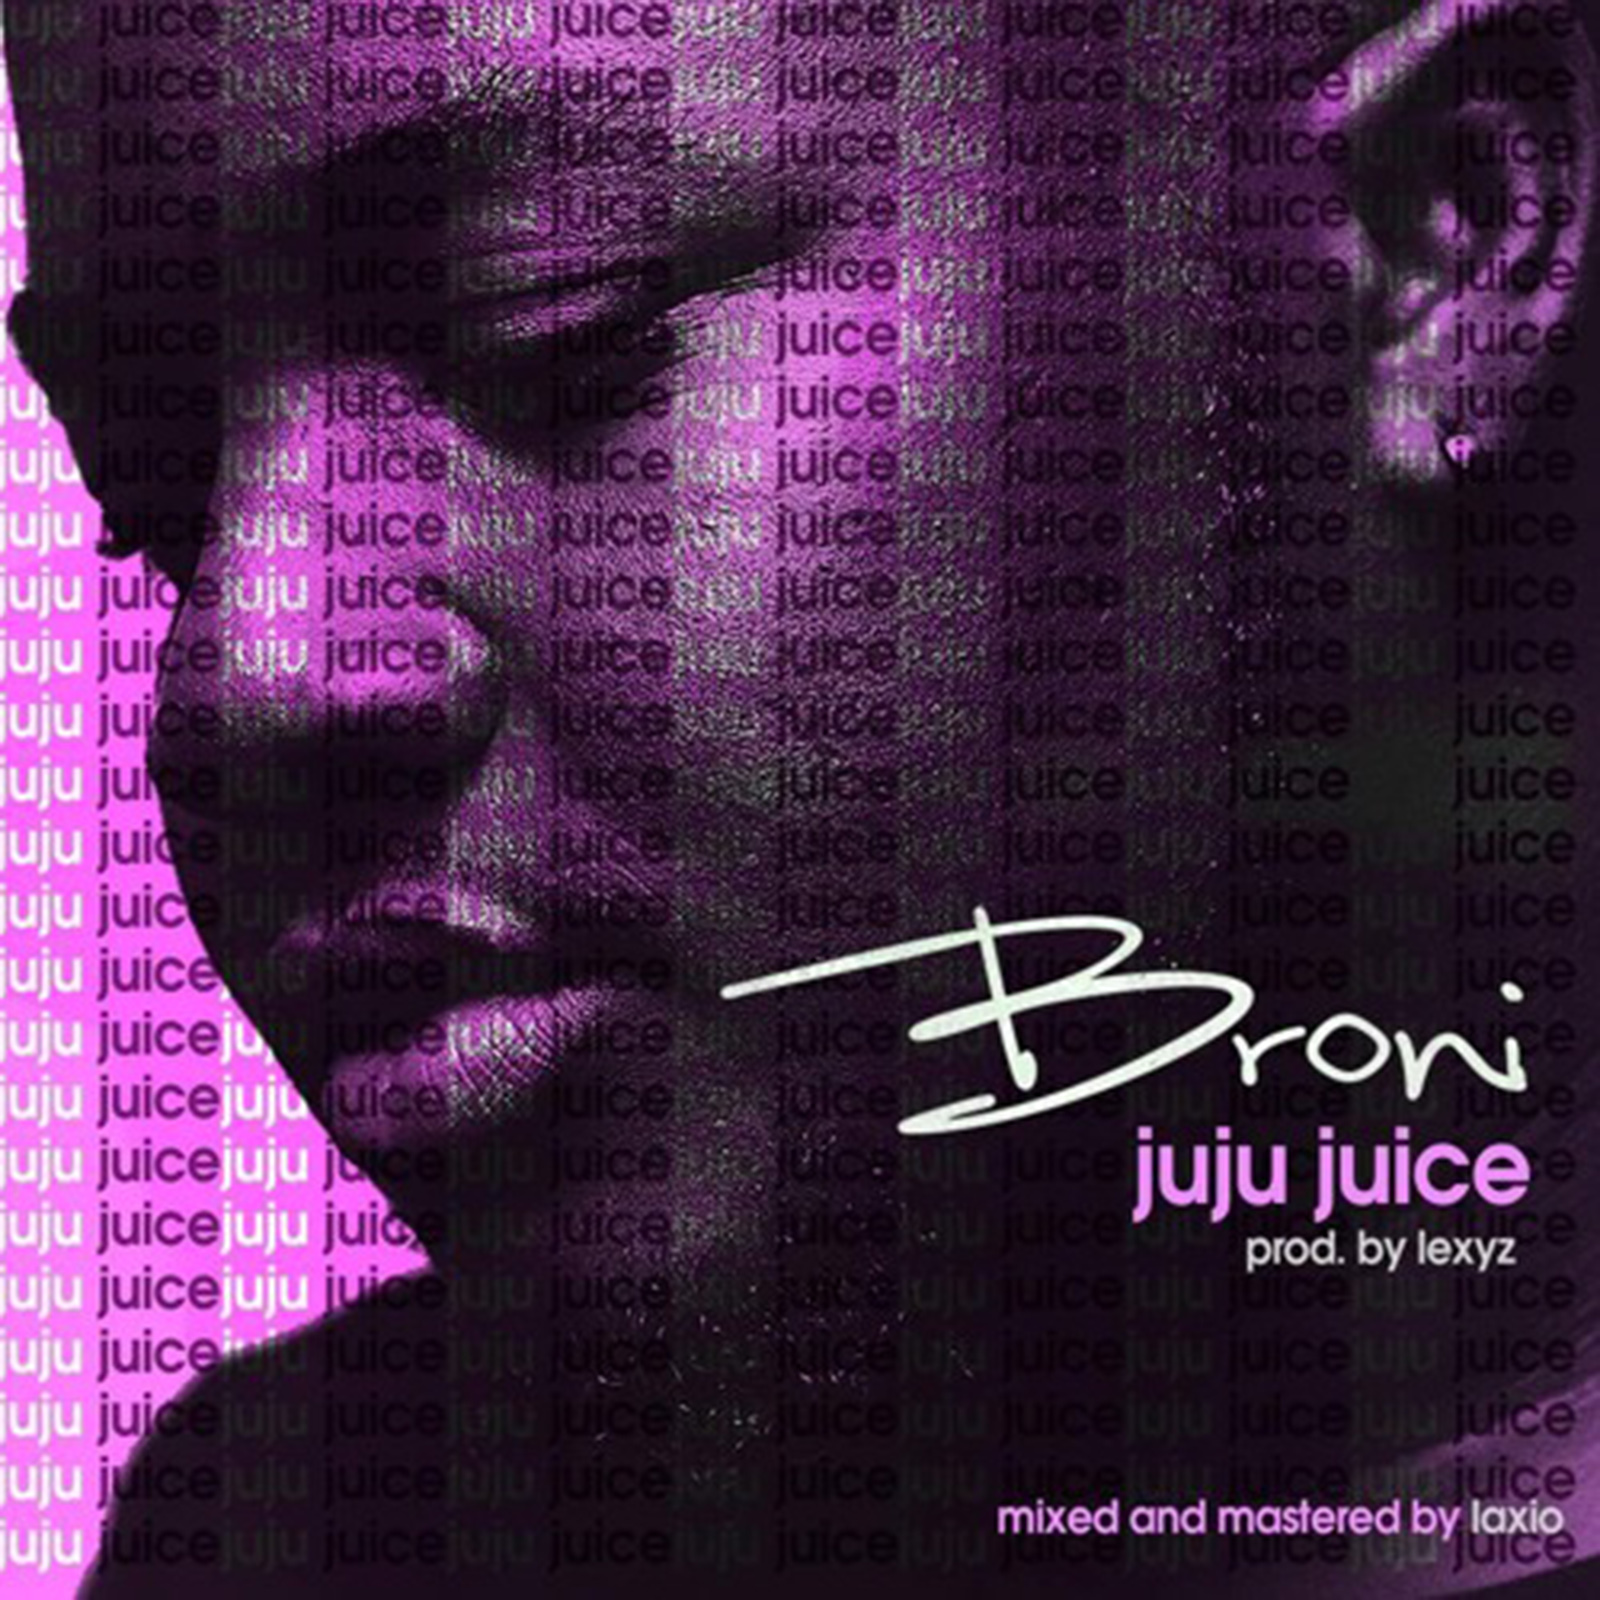 Juju Juice by Broni